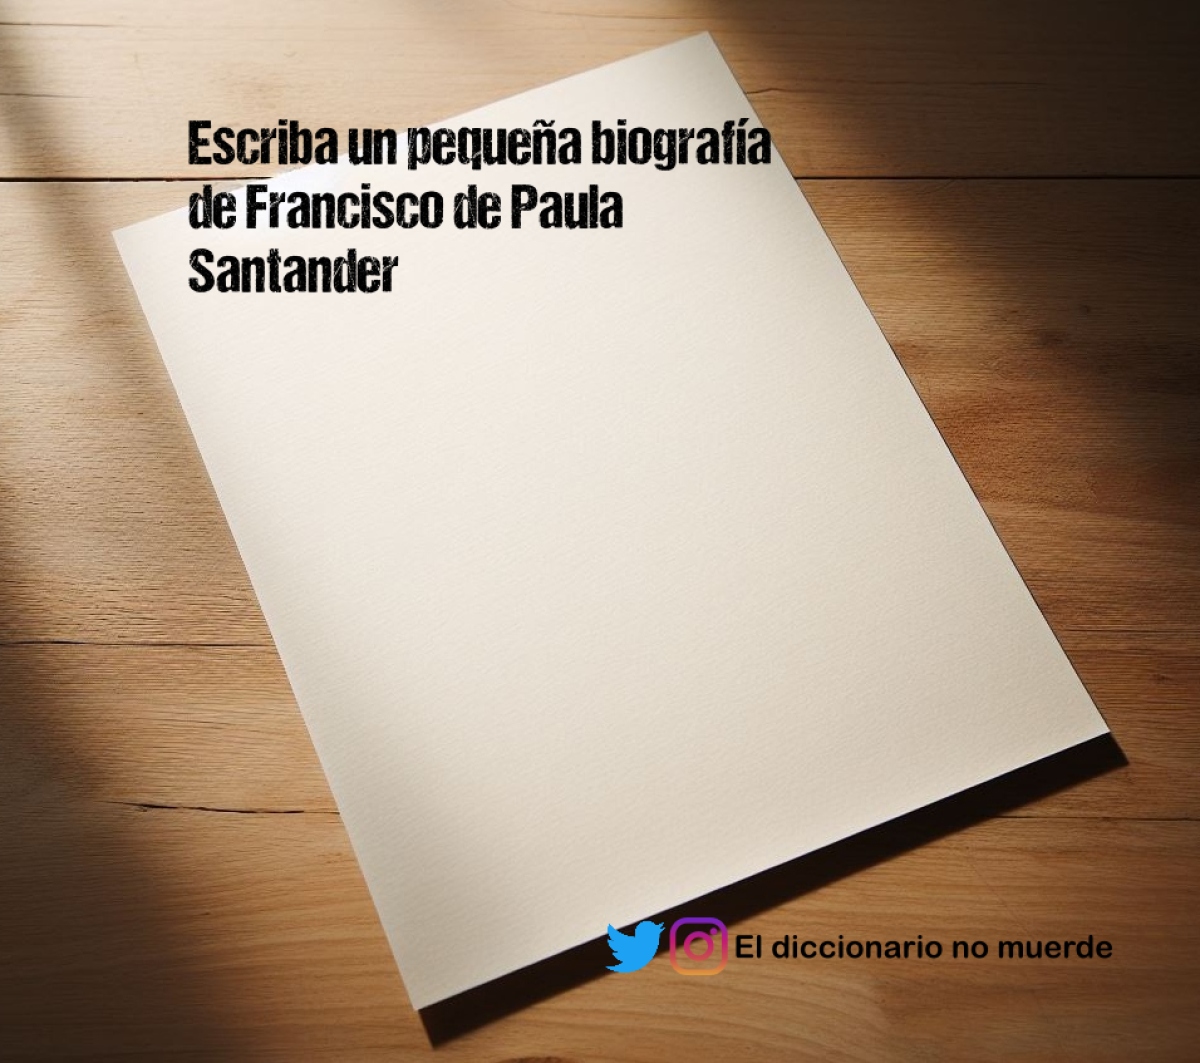 Escriba un pequeña biografía de Francisco de Paula Santander